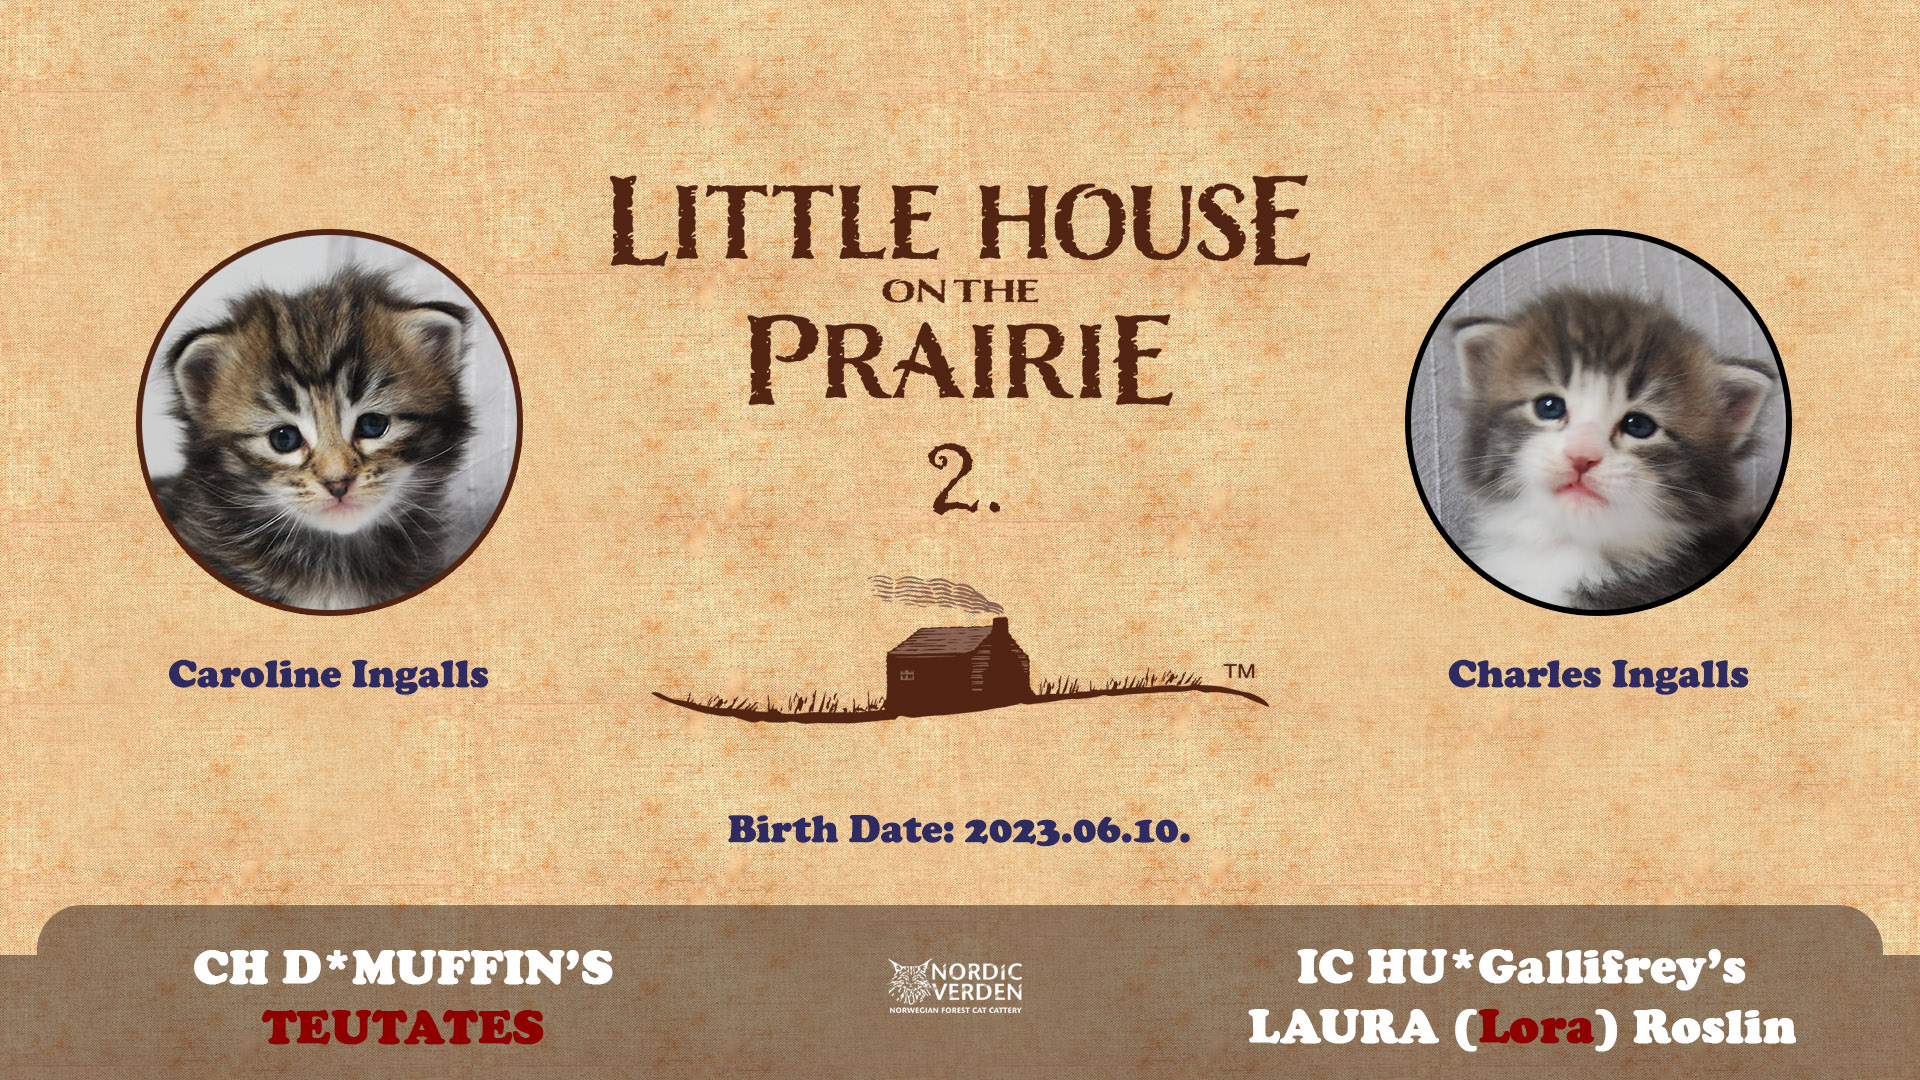 2023.06.10. Alom neve: Little House on the Prairie 2.